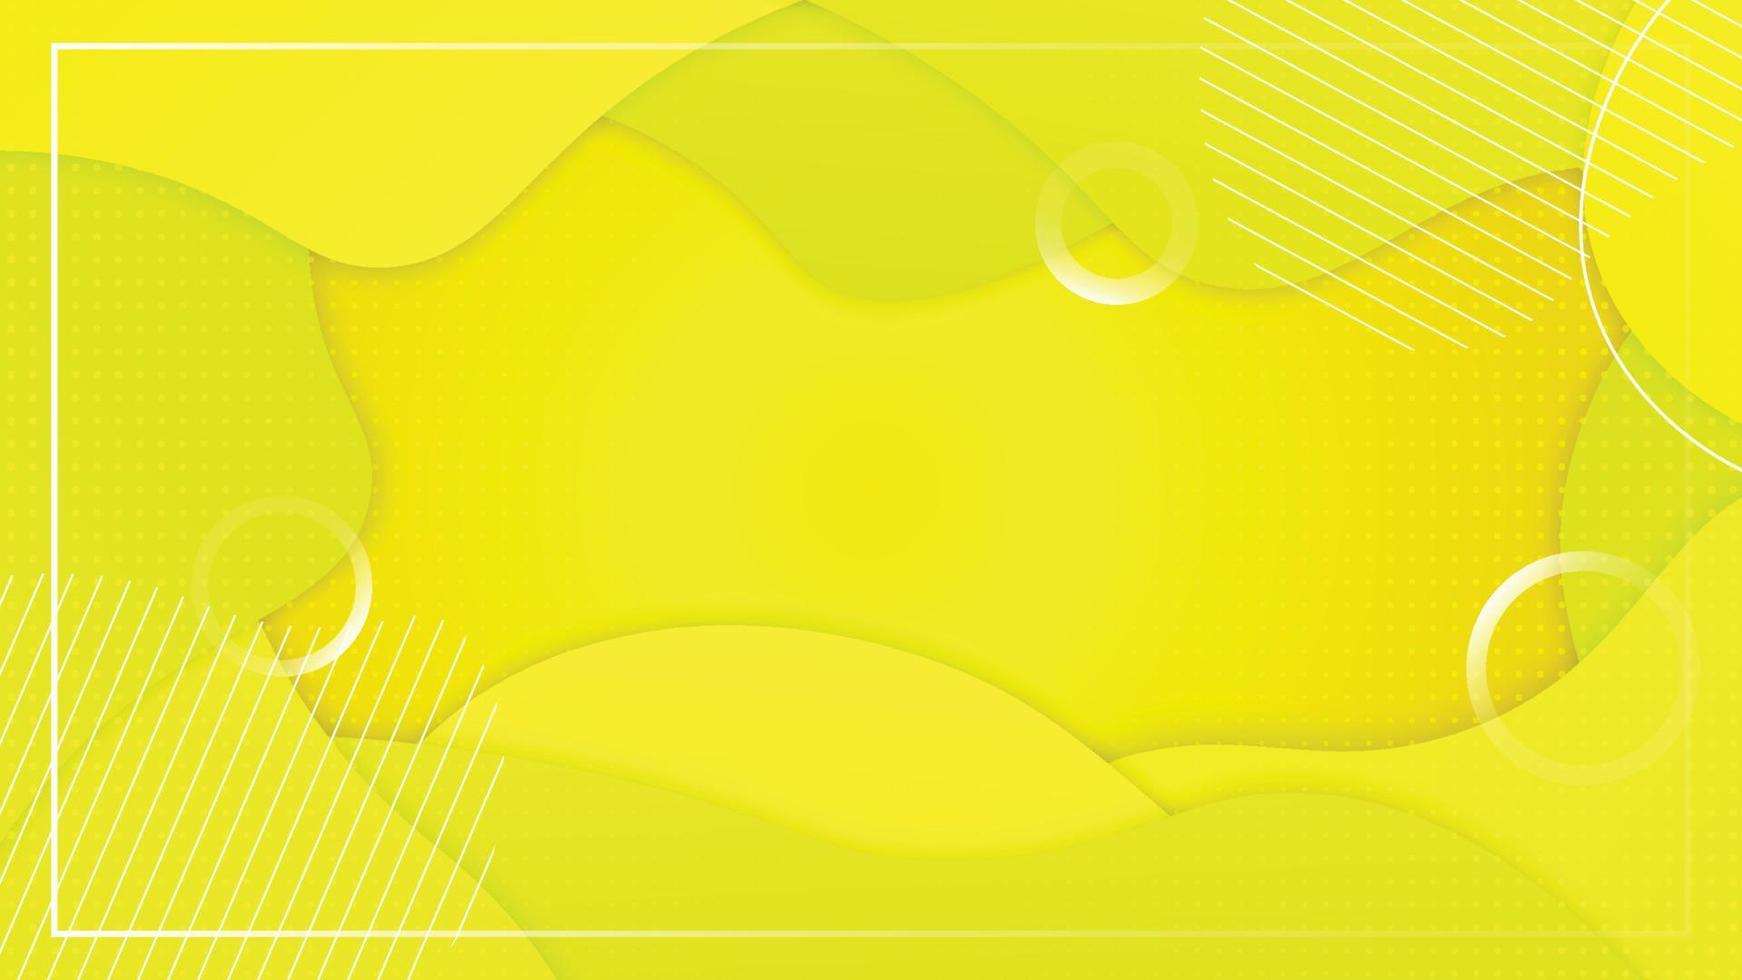 gul bakgrund med flytande former modernt koncept. abstrakt flytande affisch. lämplig för banner, webb, sidhuvud, omslag, skylt, broschyr, sociala medier, målsida. vektor